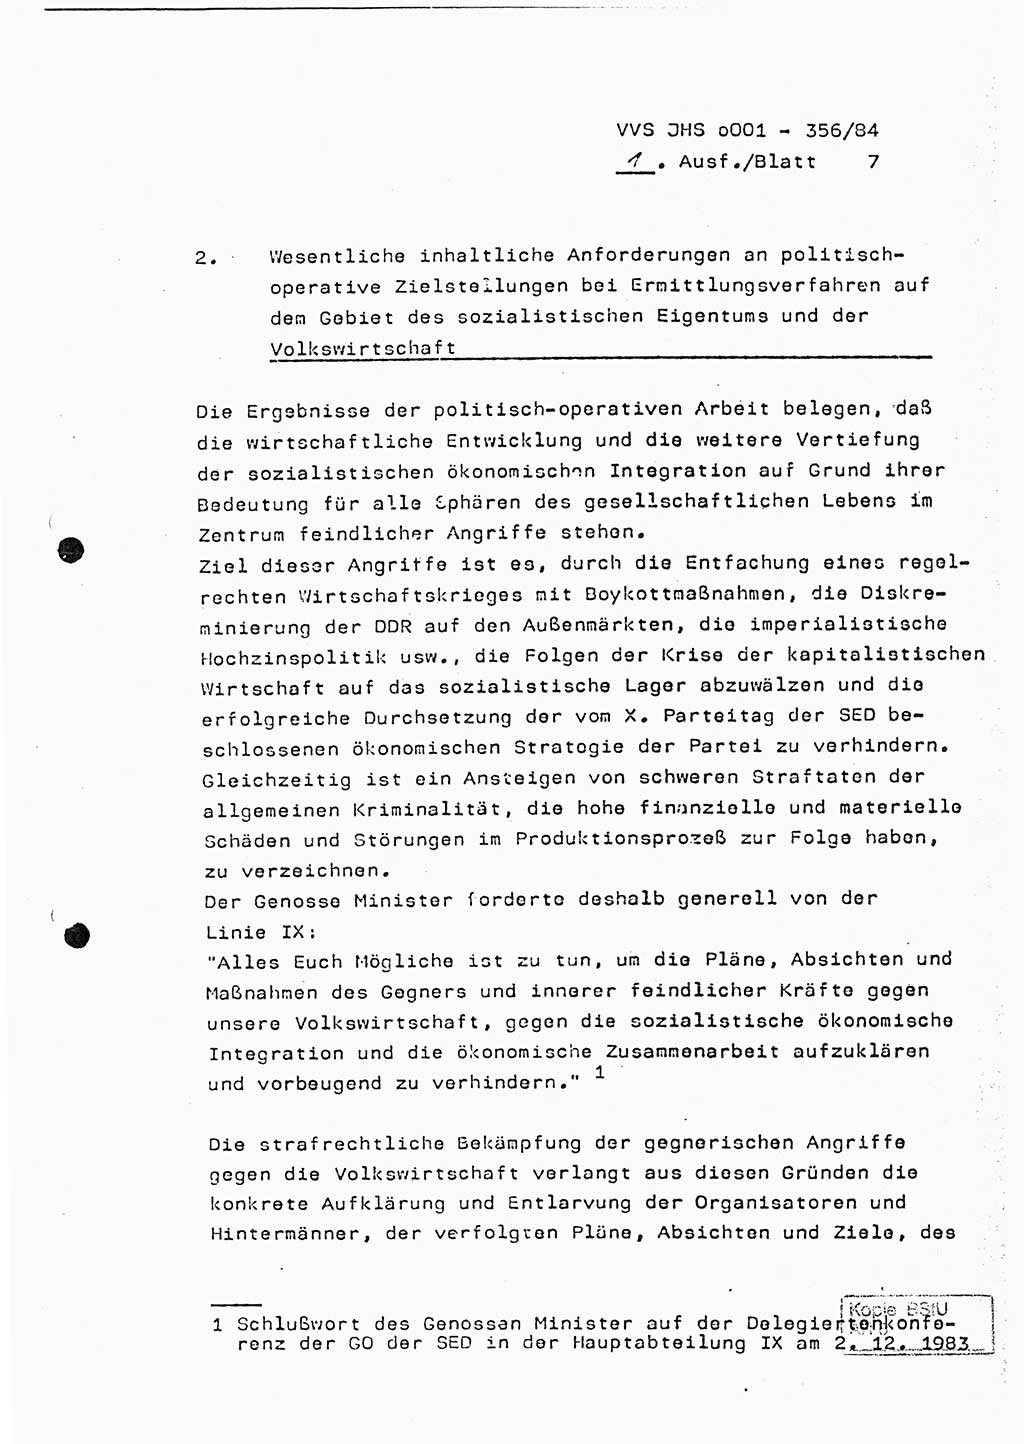 Diplomarbeit, Major Lutz Rahaus (HA Ⅸ/3), Ministerium für Staatssicherheit (MfS) [Deutsche Demokratische Republik (DDR)], Juristische Hochschule (JHS), Vertrauliche Verschlußsache (VVS) o001-356/84, Potsdam 1984, Seite 7 (Dipl.-Arb. MfS DDR JHS VVS o001-356/84 1984, S. 7)